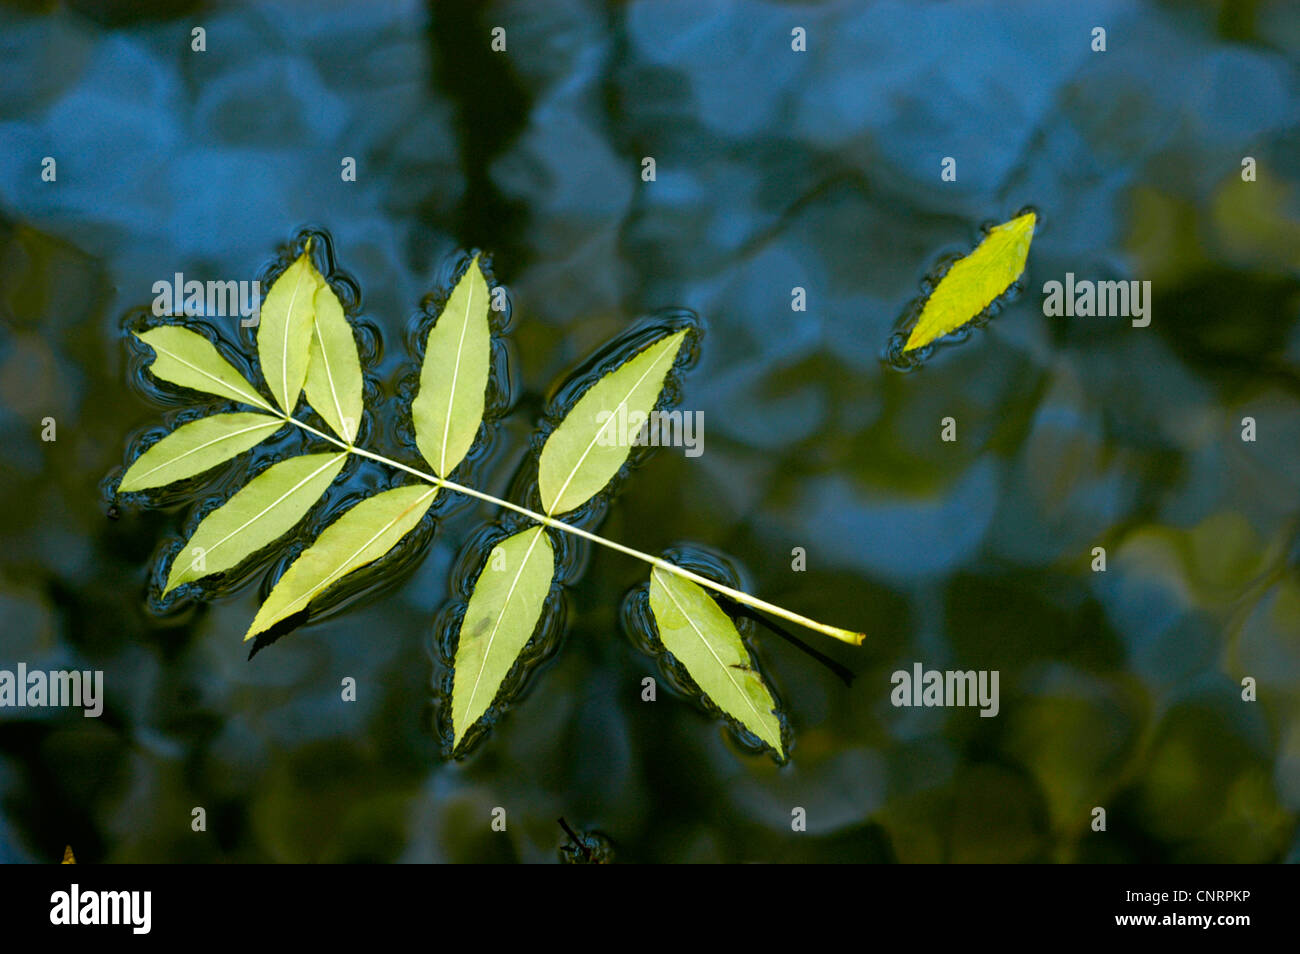 Frêne commun, frêne (Fraxinus excelsior), pousse des feuilles dans l'eau Banque D'Images